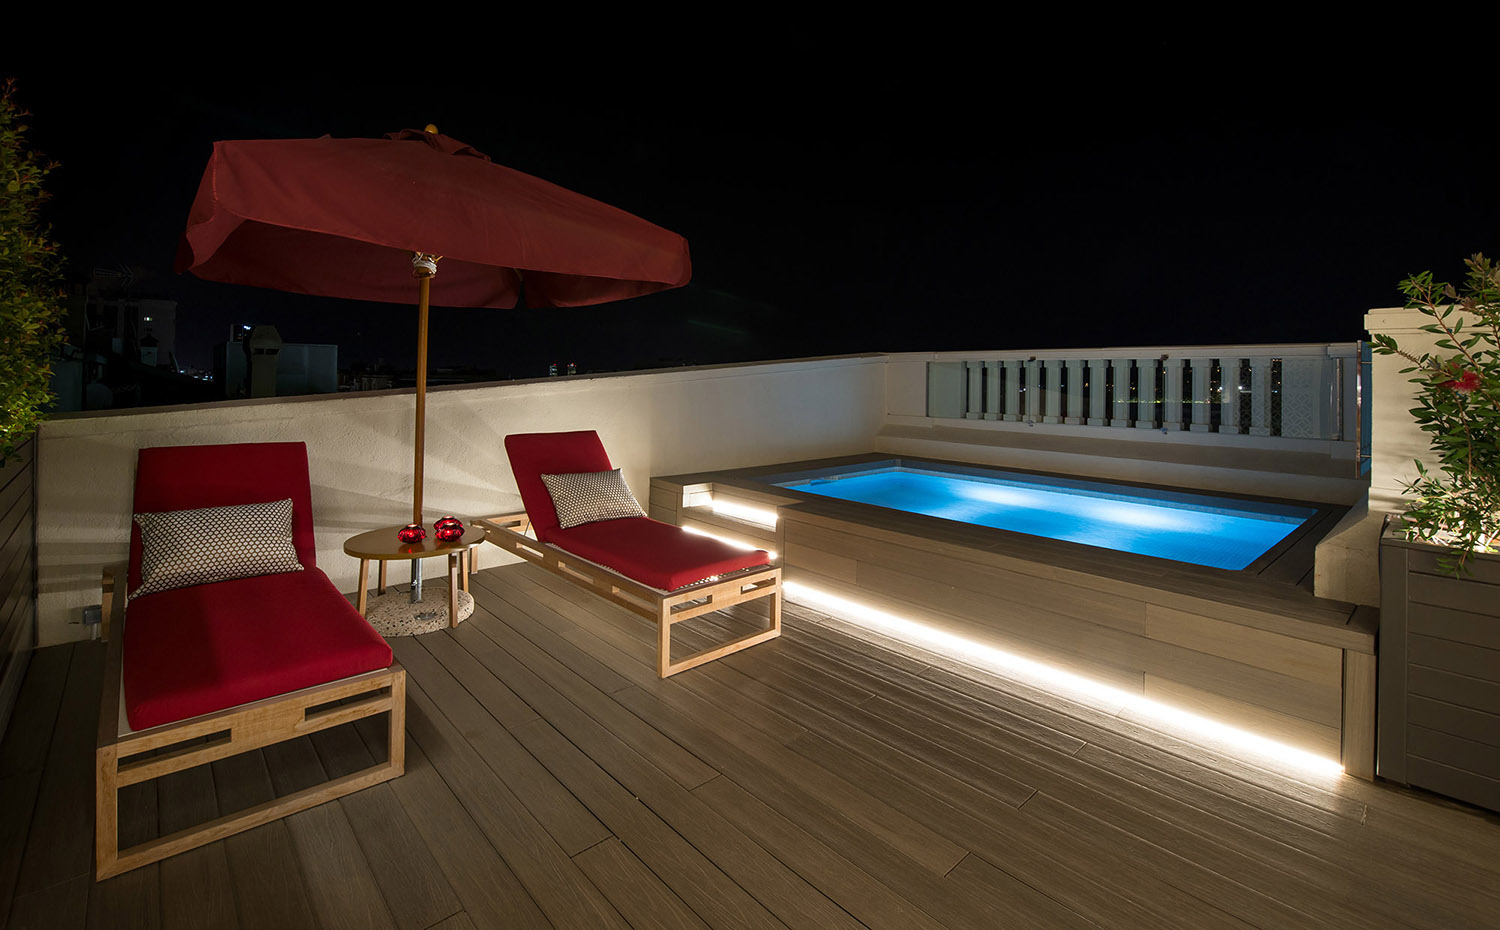 La terraza, con pavimento de madera, cuenta con una pequeña piscina. La terraza, con pavimento de madera, cuenta con una pequeña piscina para refrescarse observando el skyline